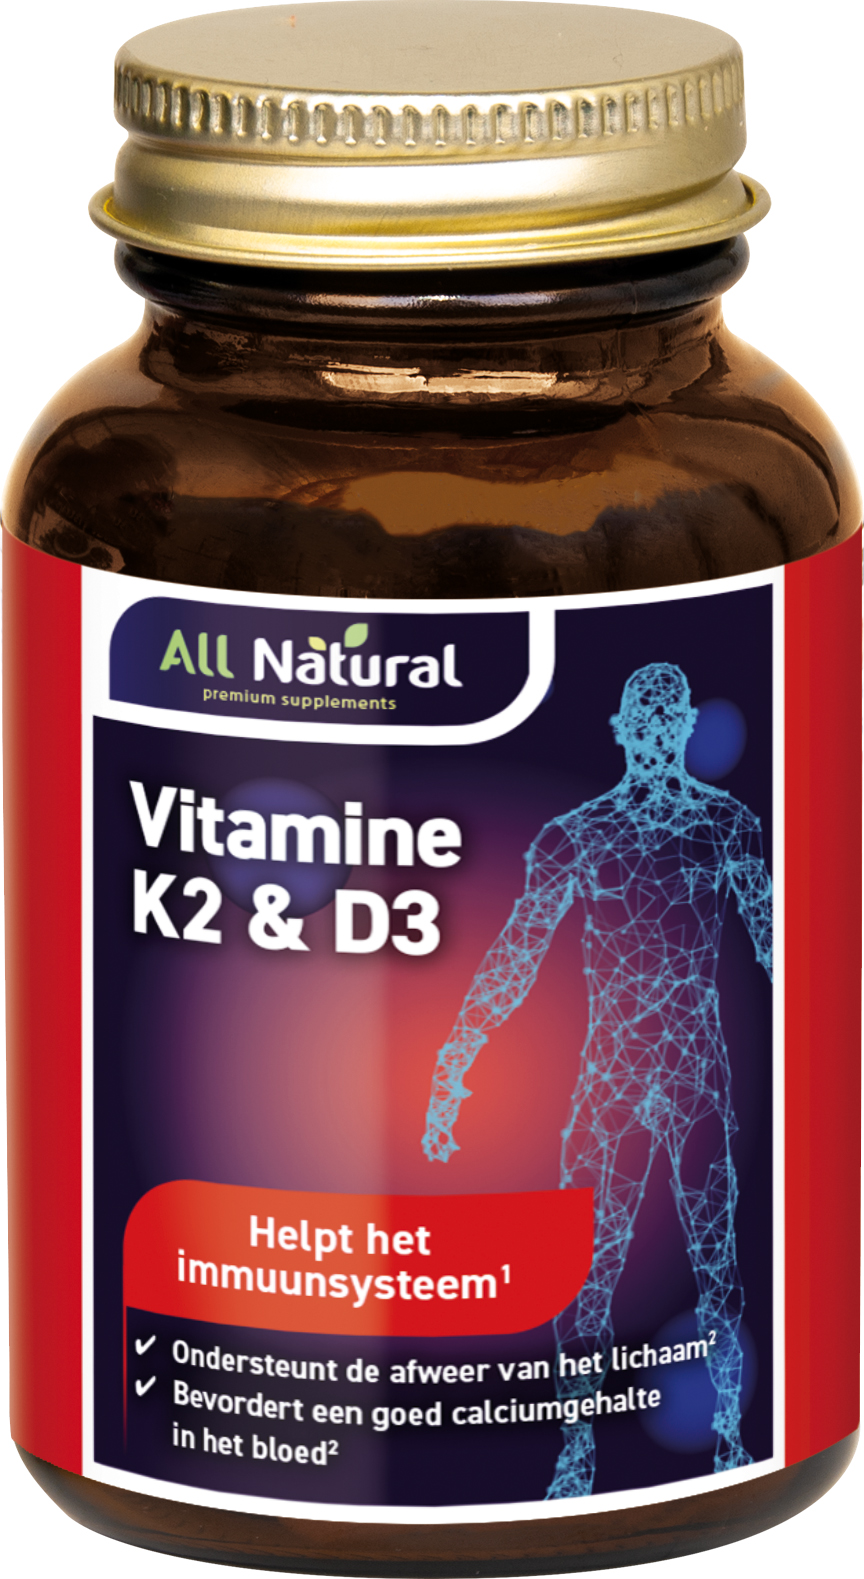 All Natural Vitamine K2 & D3 Capsules